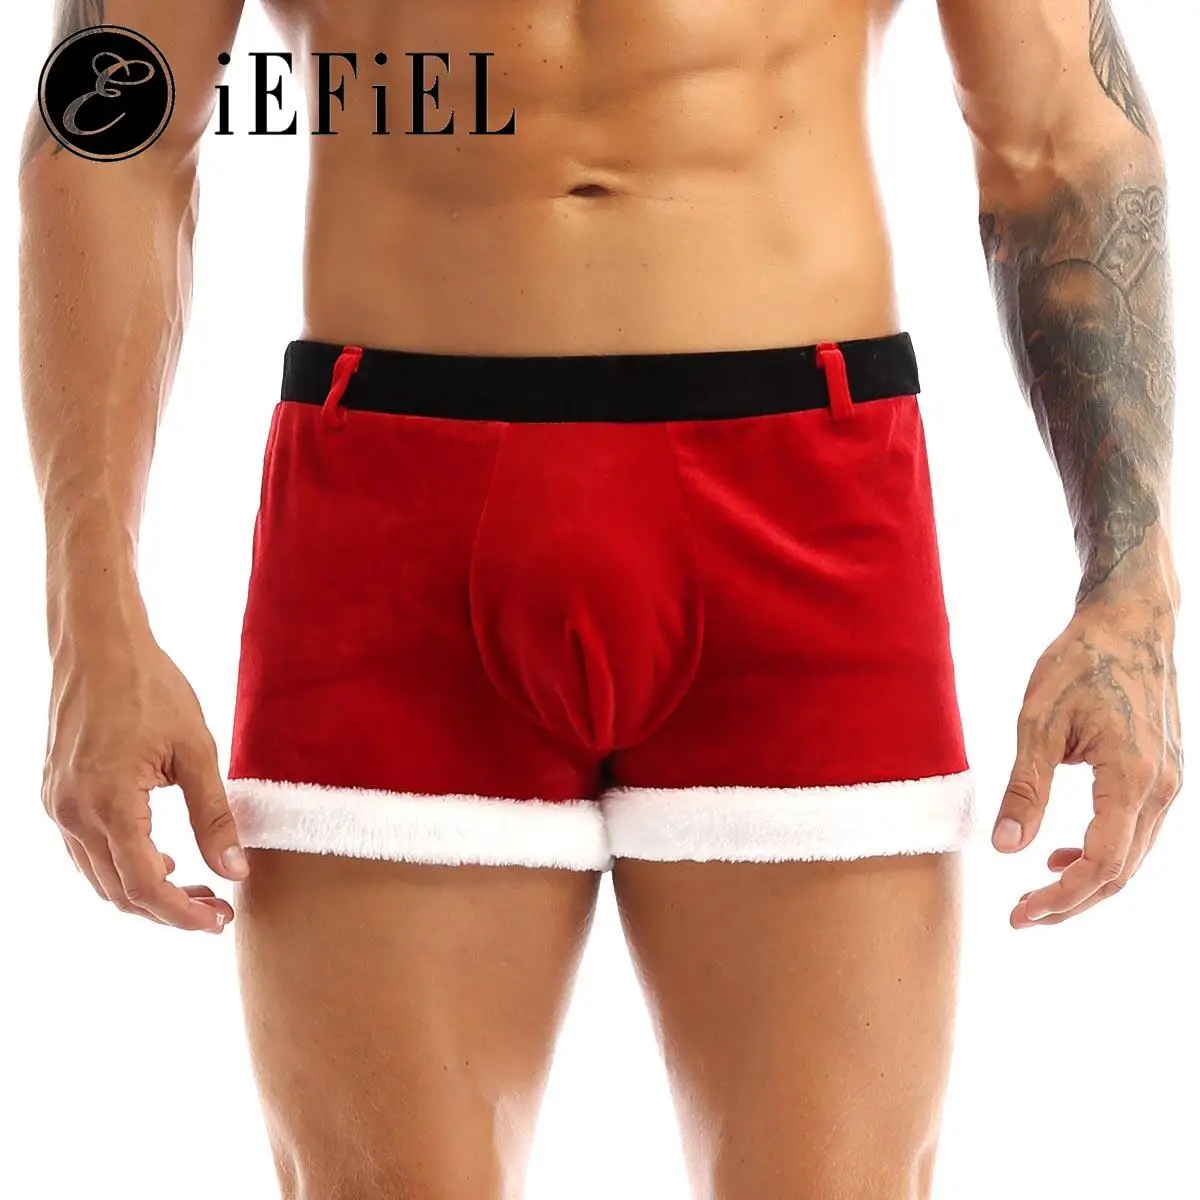 Мъжки коледен костюм на Дядо Коледа за възрастни, червено кадифе боксови долни гащи, бельо, гащи за коледните празници, партита, фестивали